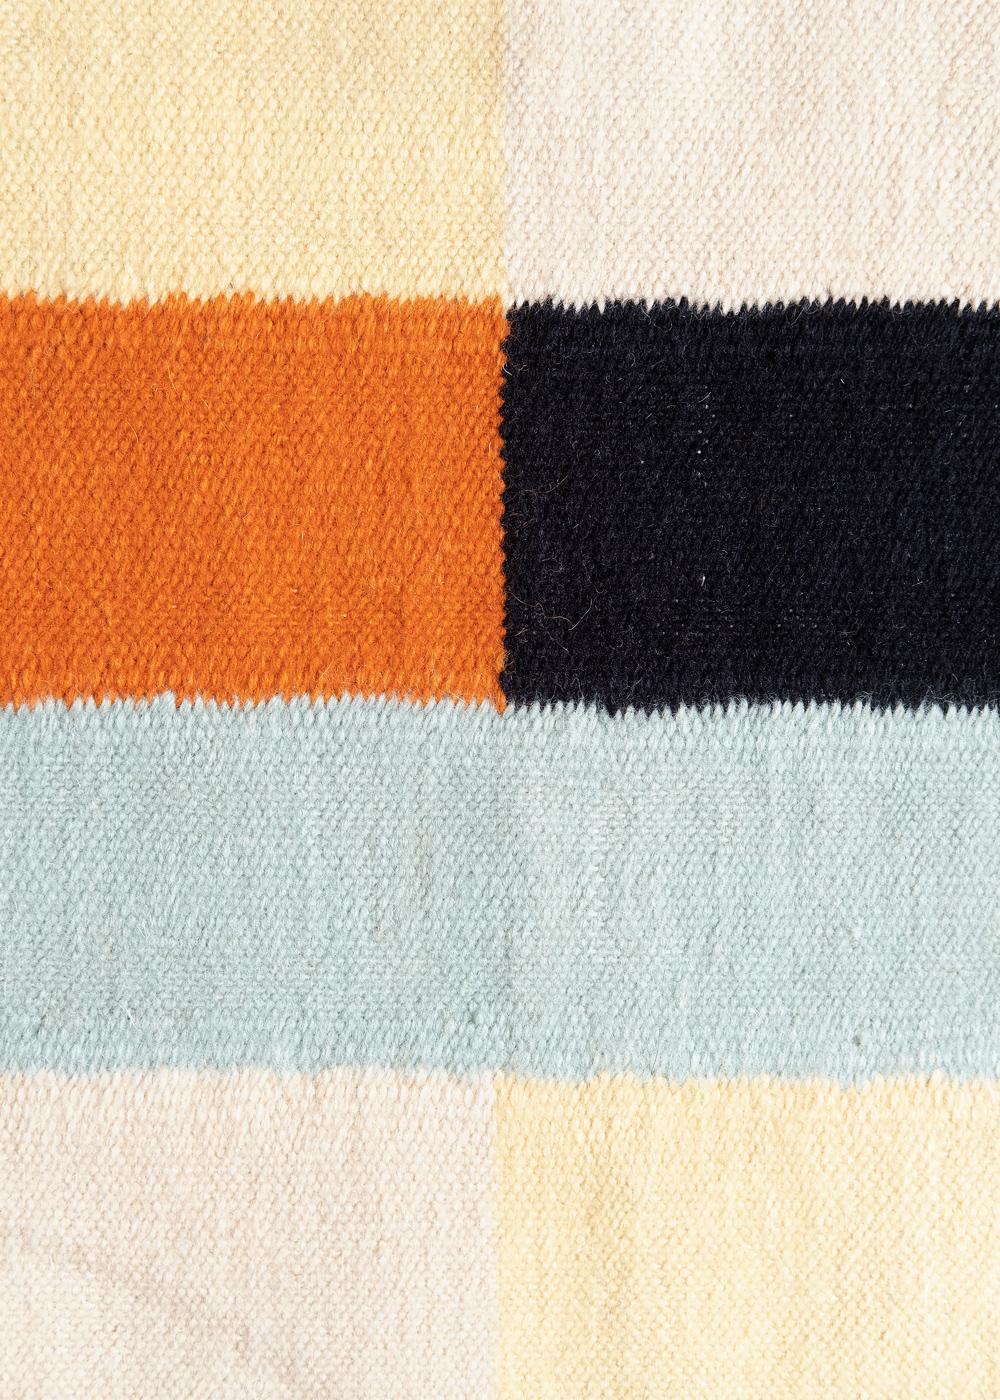 Holy Spice - Design Kelim-Teppich Liver Studio Mailand Wollteppich Baumwolle handgewebt

Dieser Teppich wurde von Liver entworfen, einem kreativen Studio mit Sitz in Mailand, Italien. Die aus einem geometrischen Raster zusammengesetzten Farben